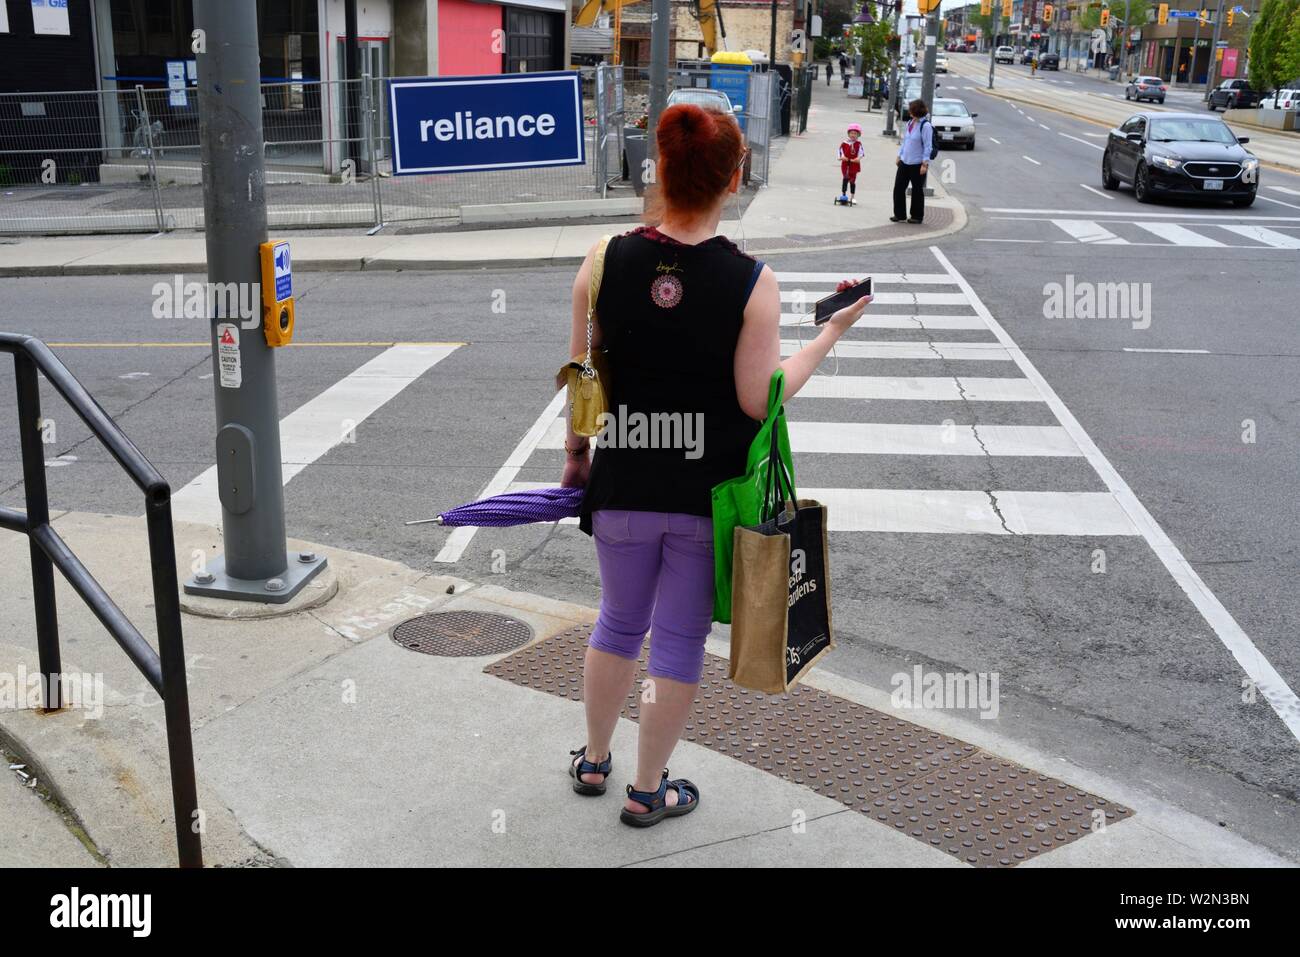 Eine Frau in lila Hose mit einem grünen Handtasche wartet eine Kreuzung und ein Zeichen der Rechtschreibung' liance zu Kreuz'', Toronto, Ontario, Kanada. Stockfoto